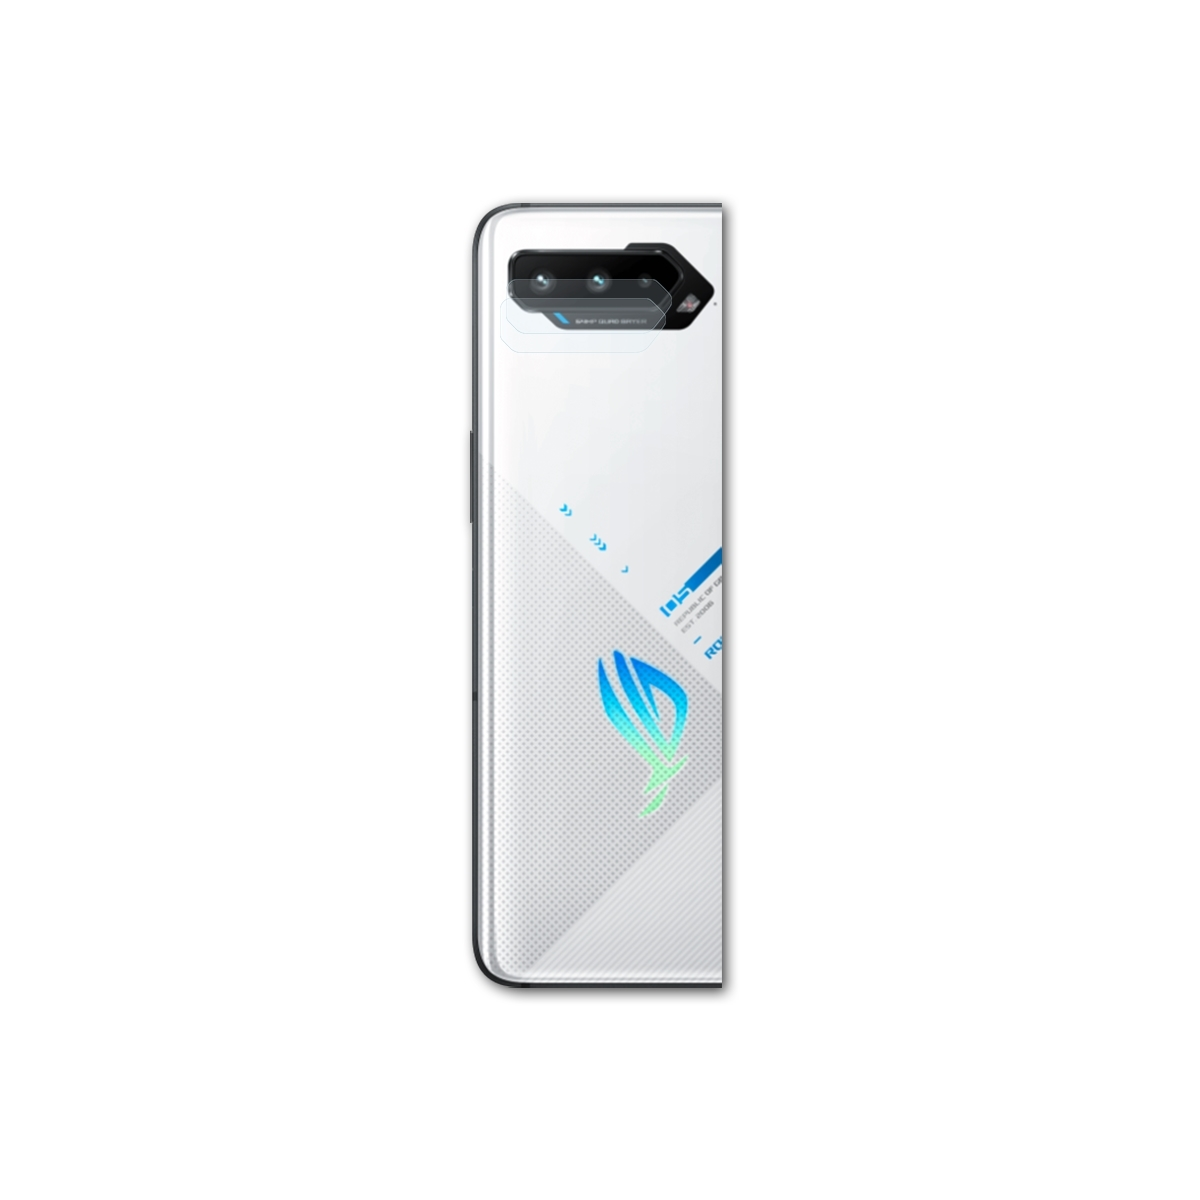 Schutzfolie(für Asus Lens) Pro BRUNI 2x Phone Basics-Clear ROG 5s